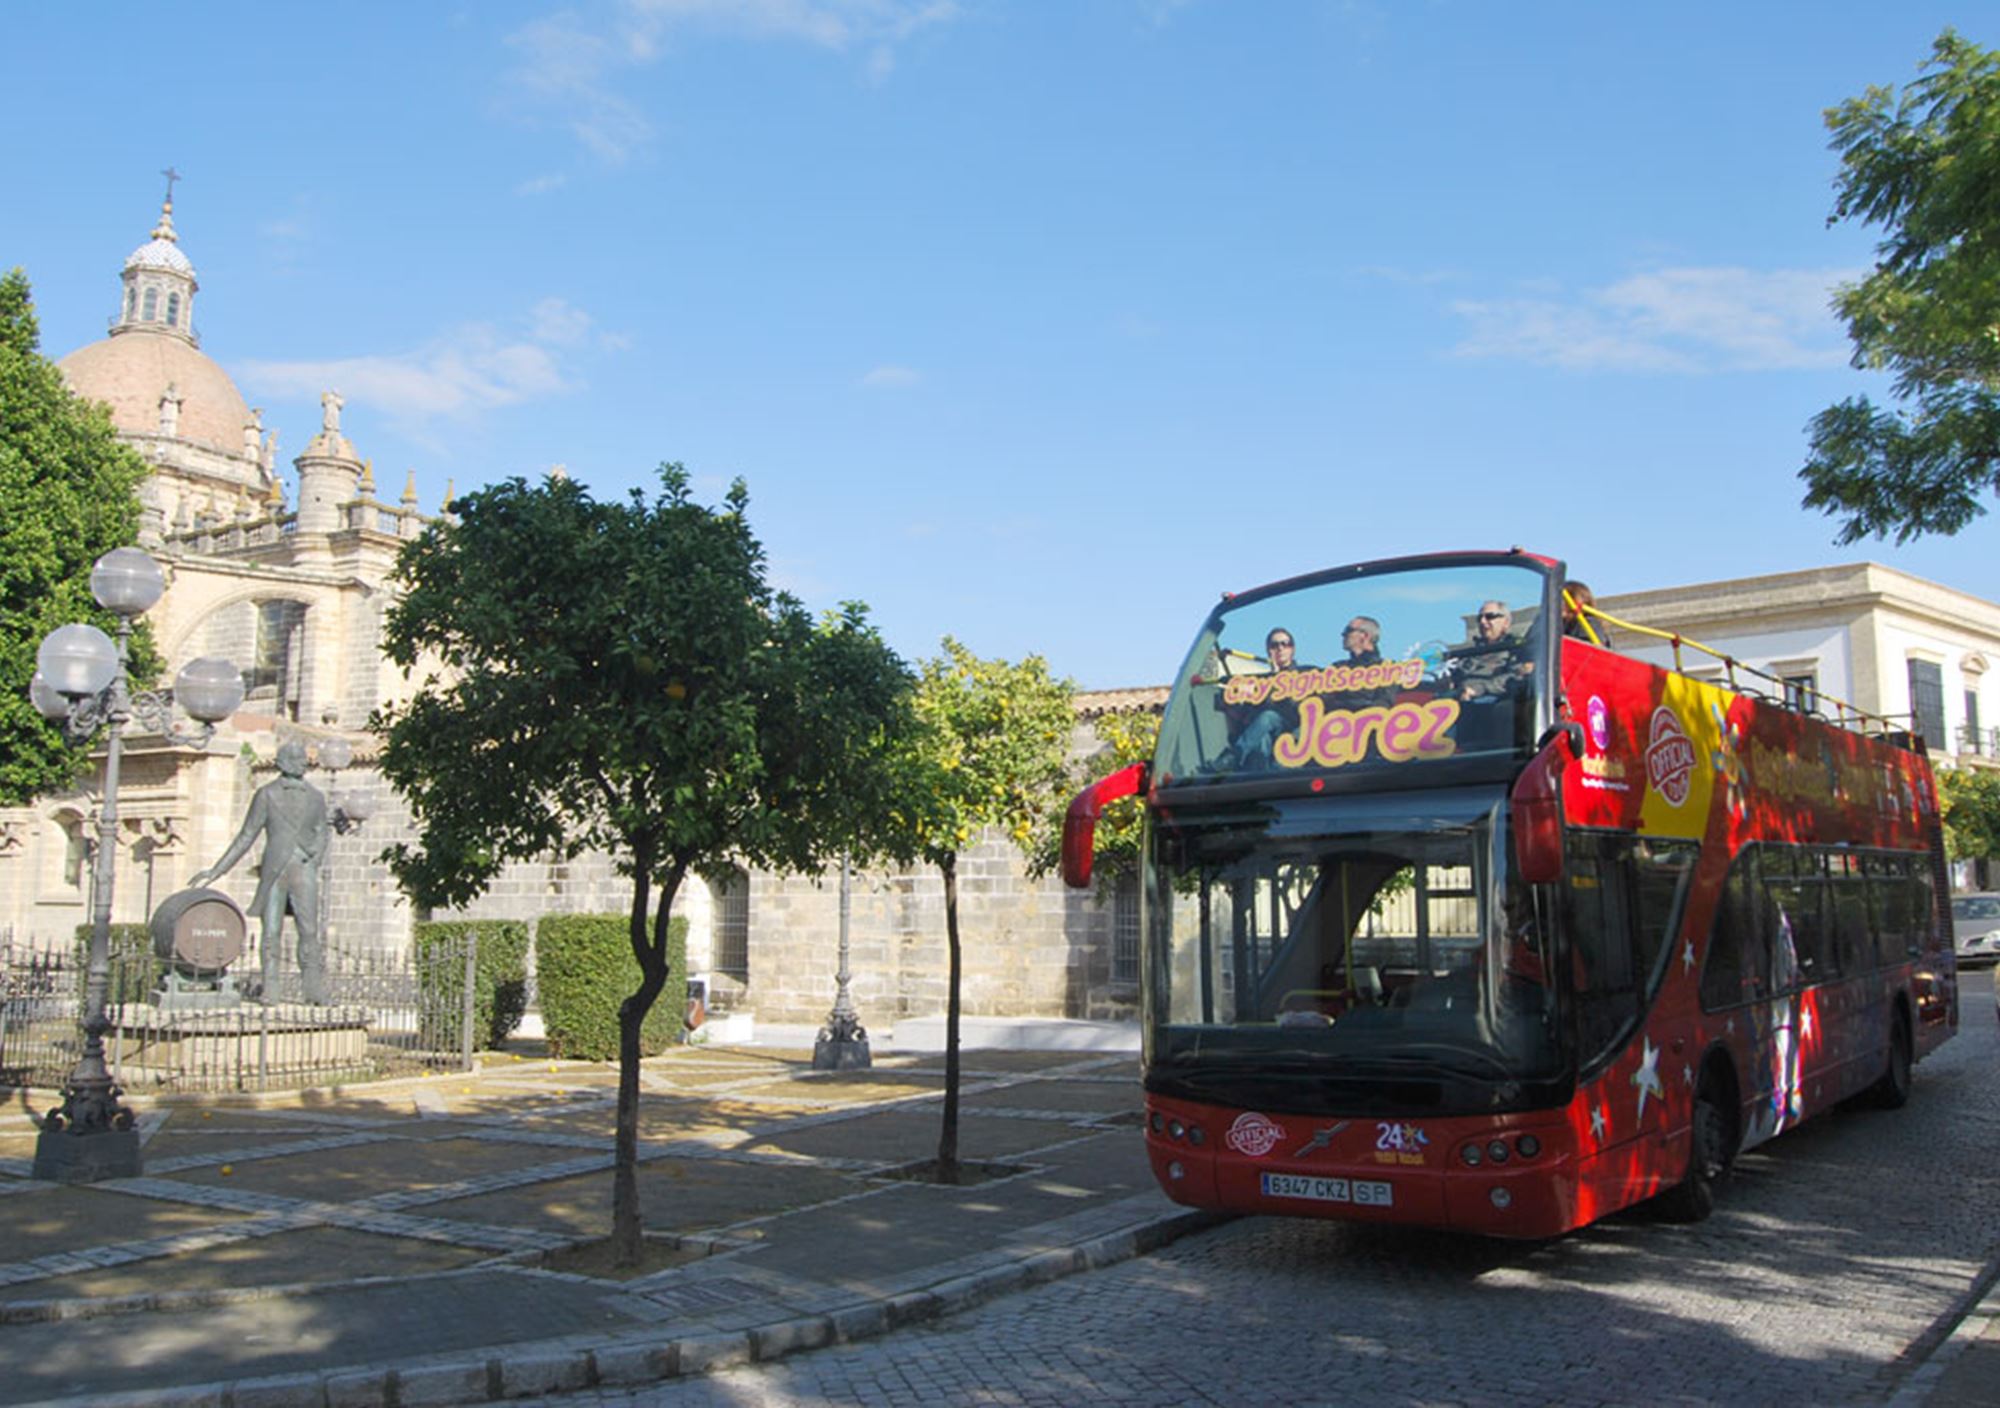 reservieren tickets besucht Touren karten Eintrittskarten Touristikbus City Sightseeing Jerez de la Frontera